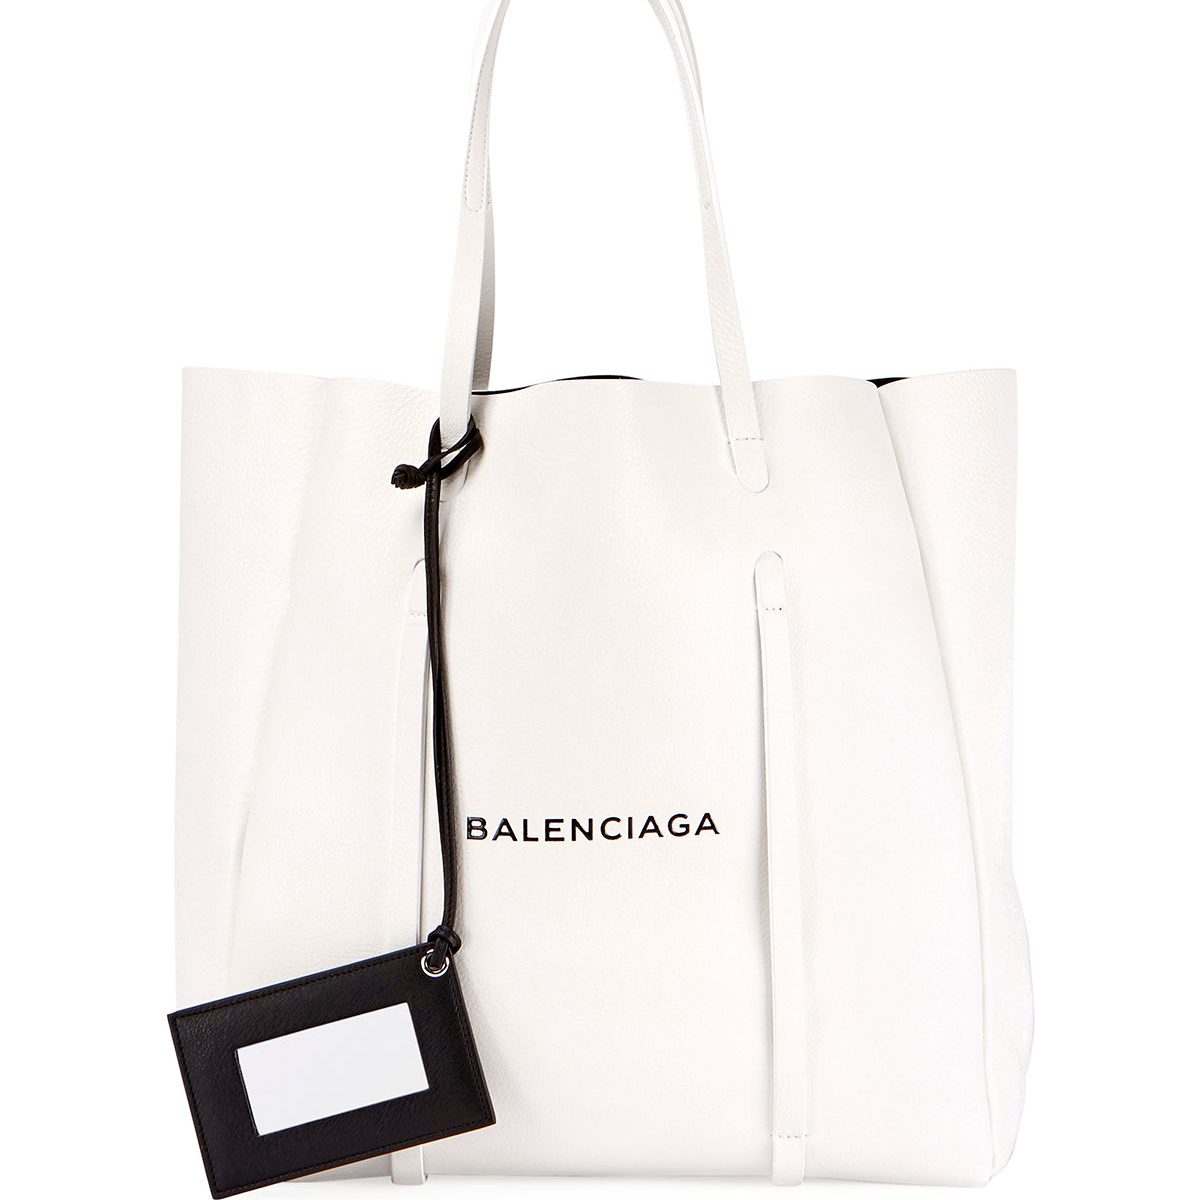 Balenciaga Fall/Winter 2017 Bag Collection Includes The New Collage Bag ...